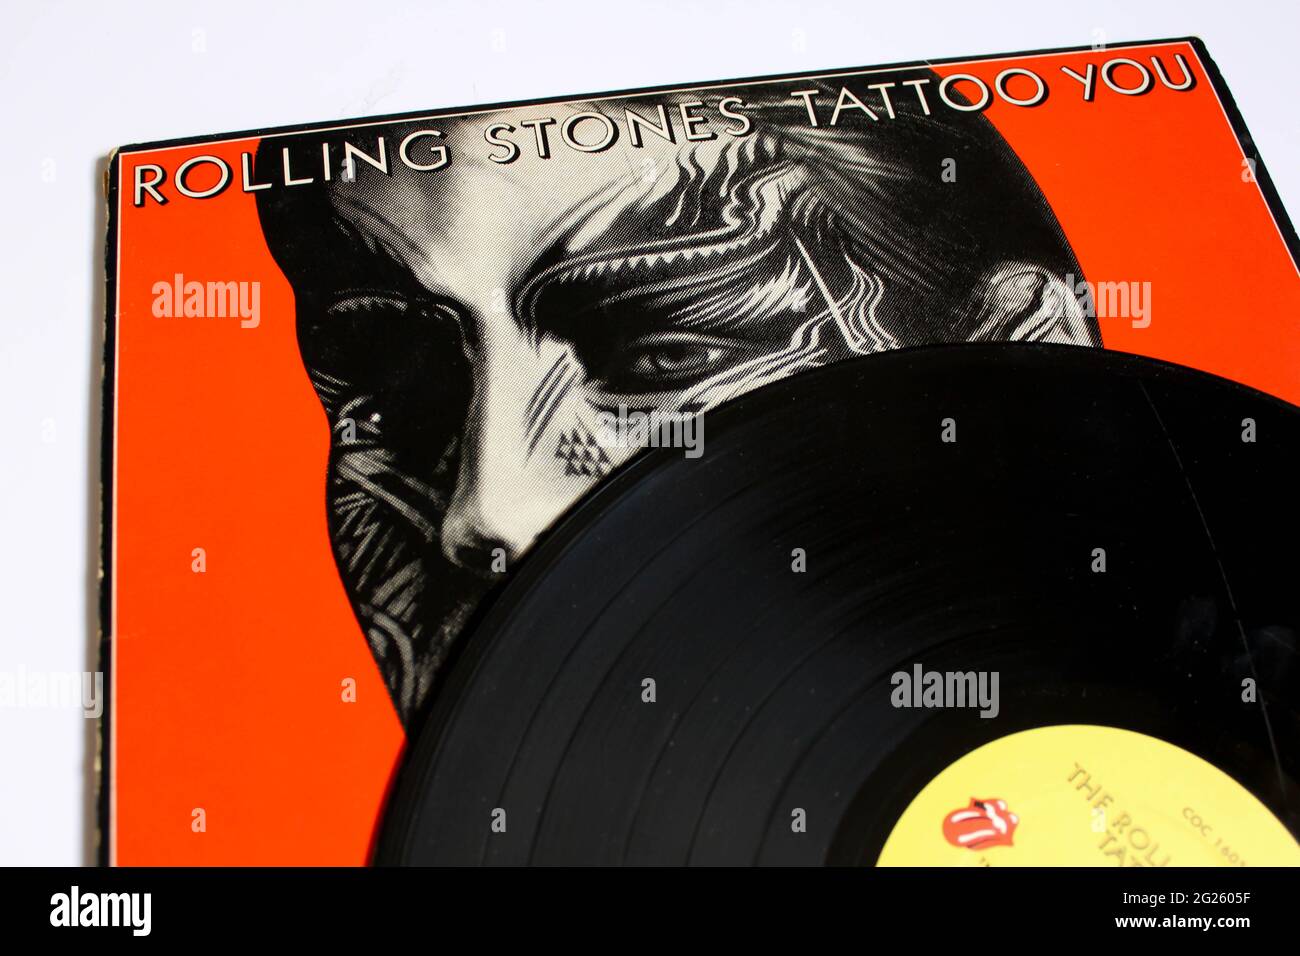 Englische Rockband, das Rolling Stones-Musikalbum auf Vinyl-Schallplatte. Titel: Tattoo You Album Cover Stockfoto